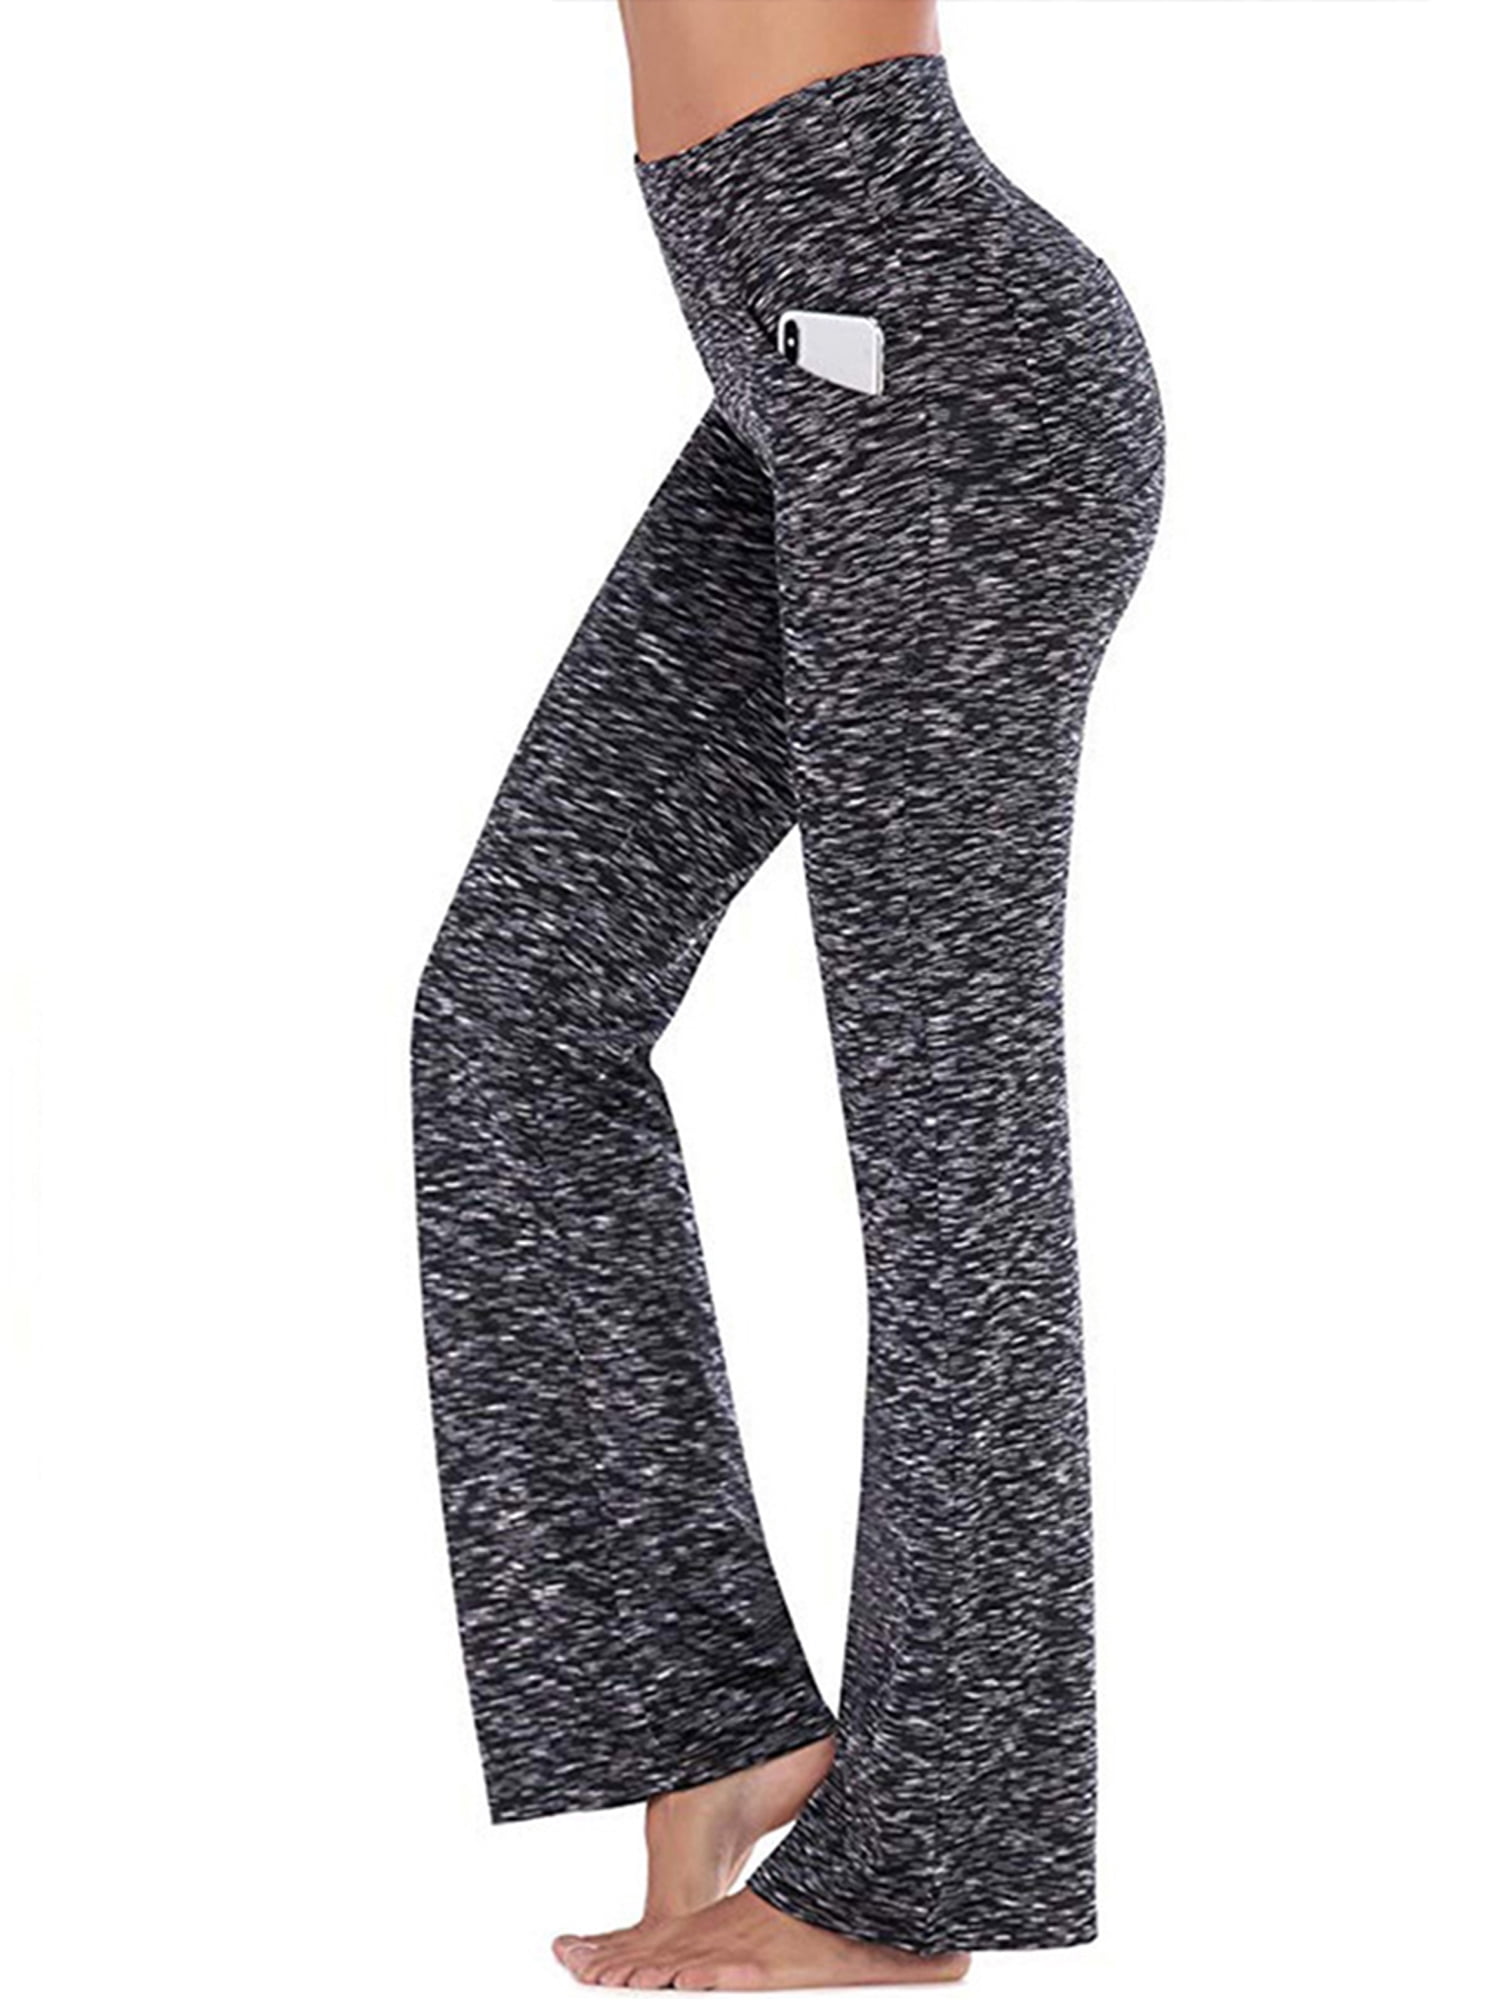 Hanerdun Women Bootcut Yoga Pants with Pockets Female High Waist Bootleg  Trousers Workout Activewear Gray 3XL 